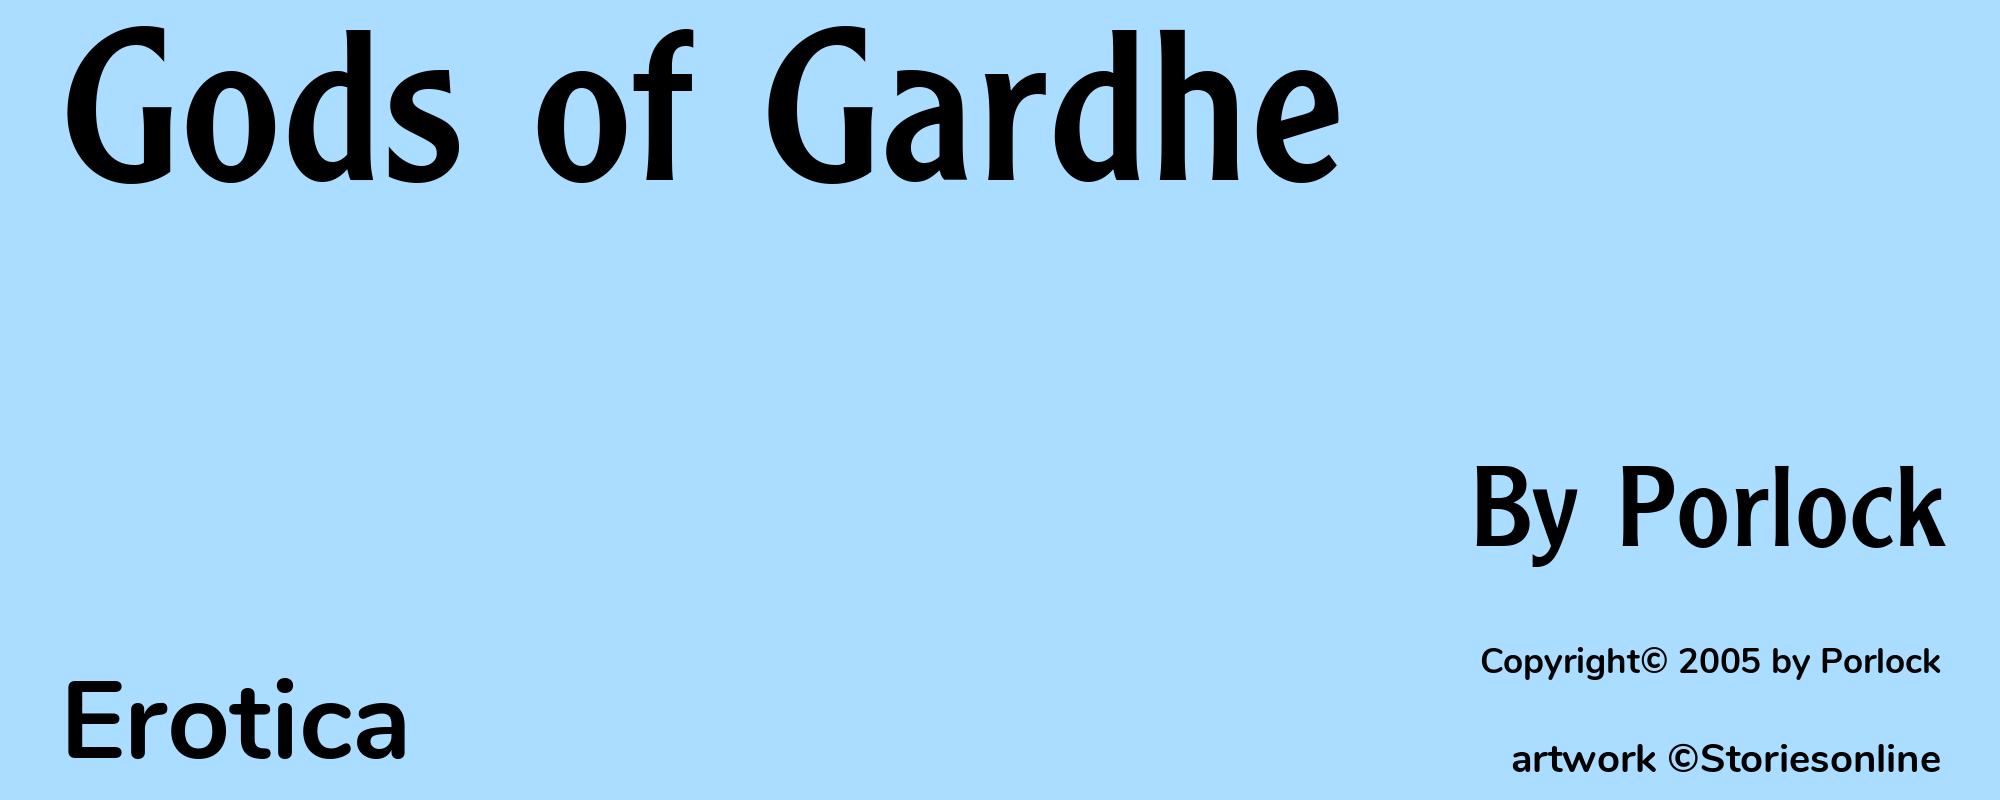 Gods of Gardhe - Cover